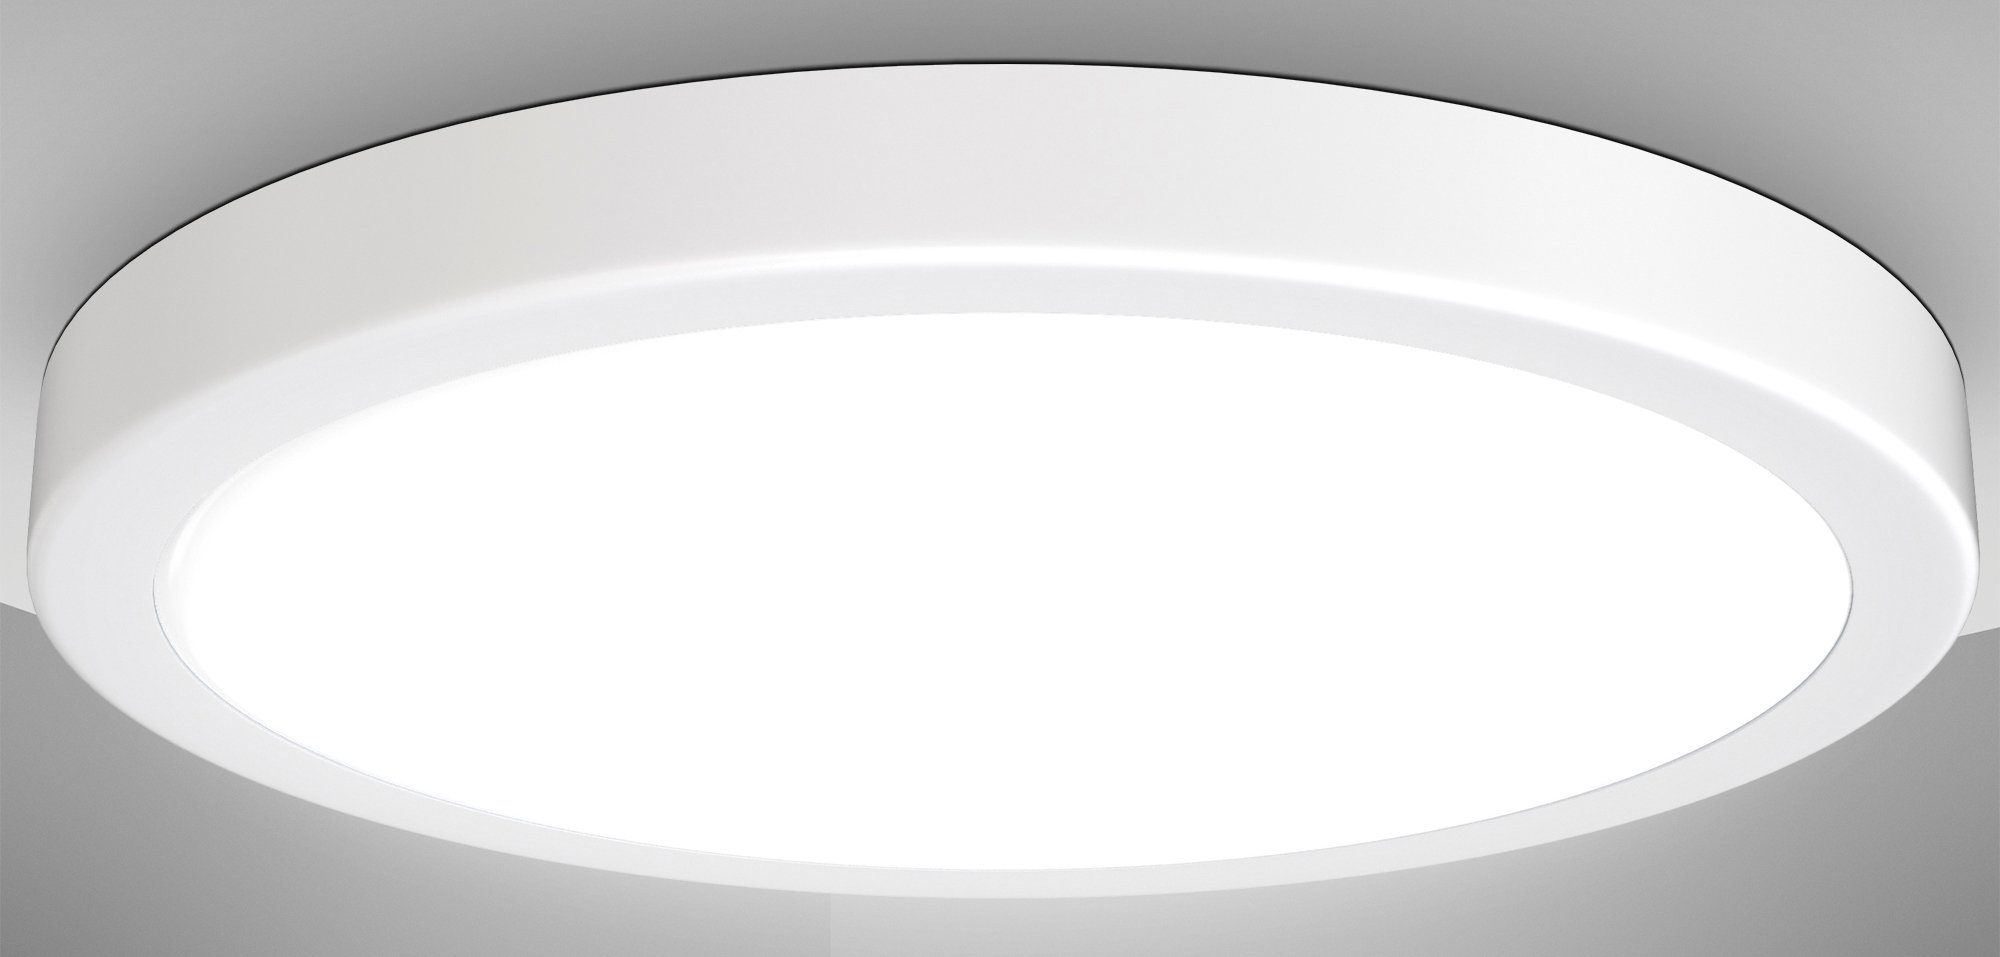 LED 24W, Neutralweiß, Weiße LED 4.000K Lumen, B.K.Licht Licht, LED Neutralweißes fest Deckenleuchte Deckenlampe, Küchenleuchte BK_DL1538 Ø38cm, 3.000 integriert,